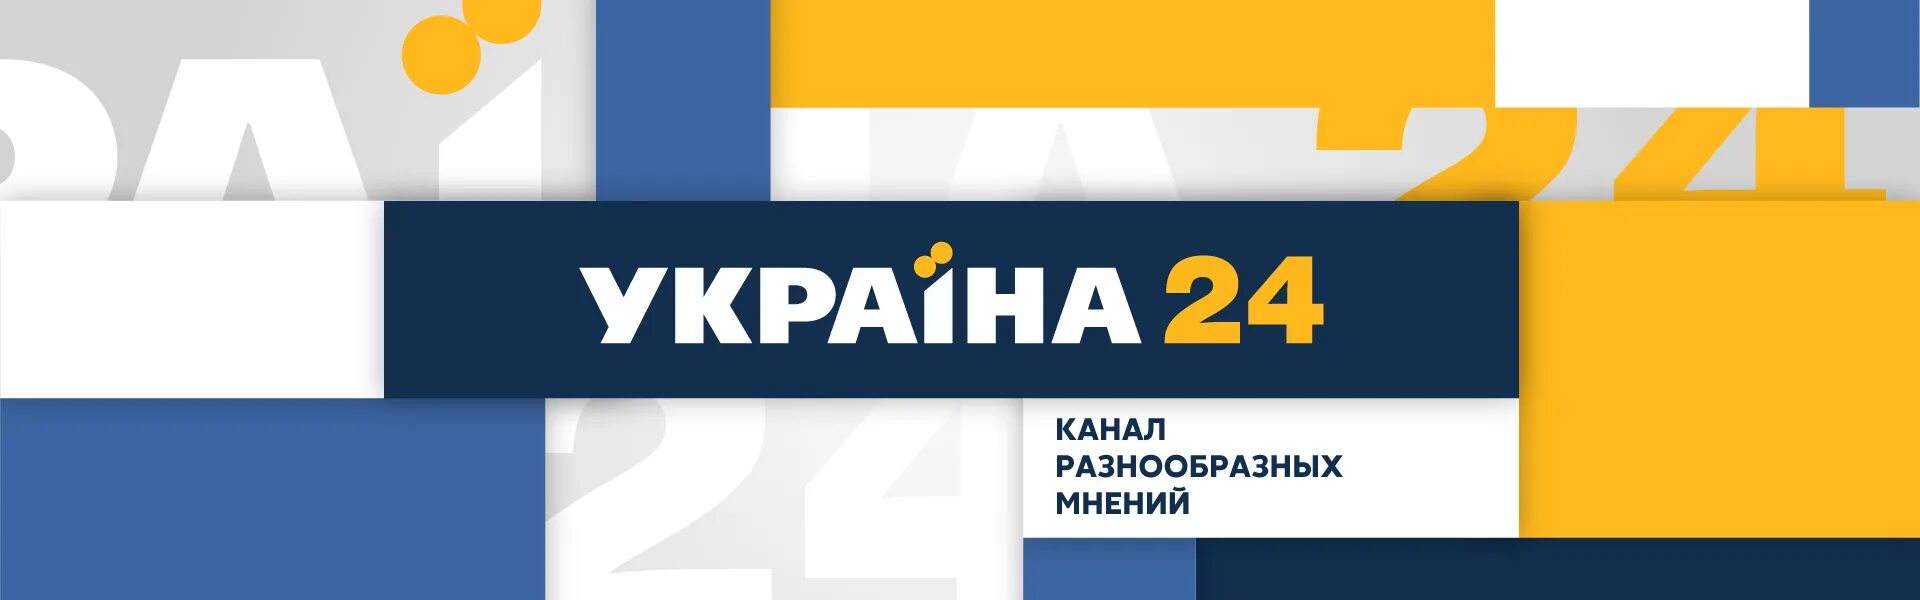 Телеканал Украина. Украина 24. Украина 24 логотип. 24 Канал Украина прямой эфир.